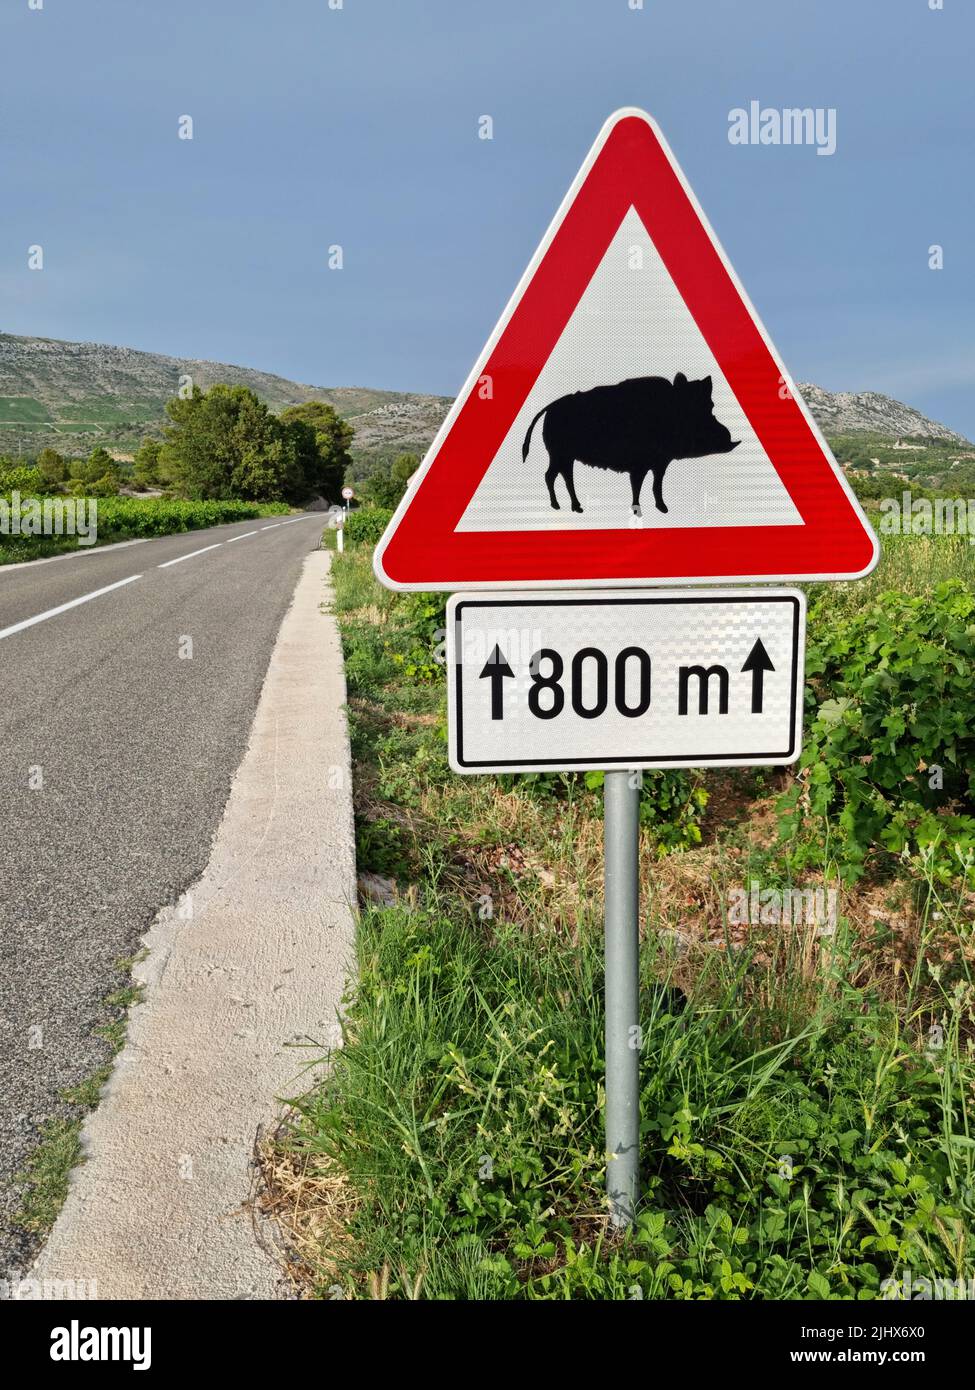 Jabalíes cruzando la señal de advertencia de carretera situada a lo largo de una carretera en Croacia (Isla de Korčula, Dalmacia, Croacia). Foto de stock